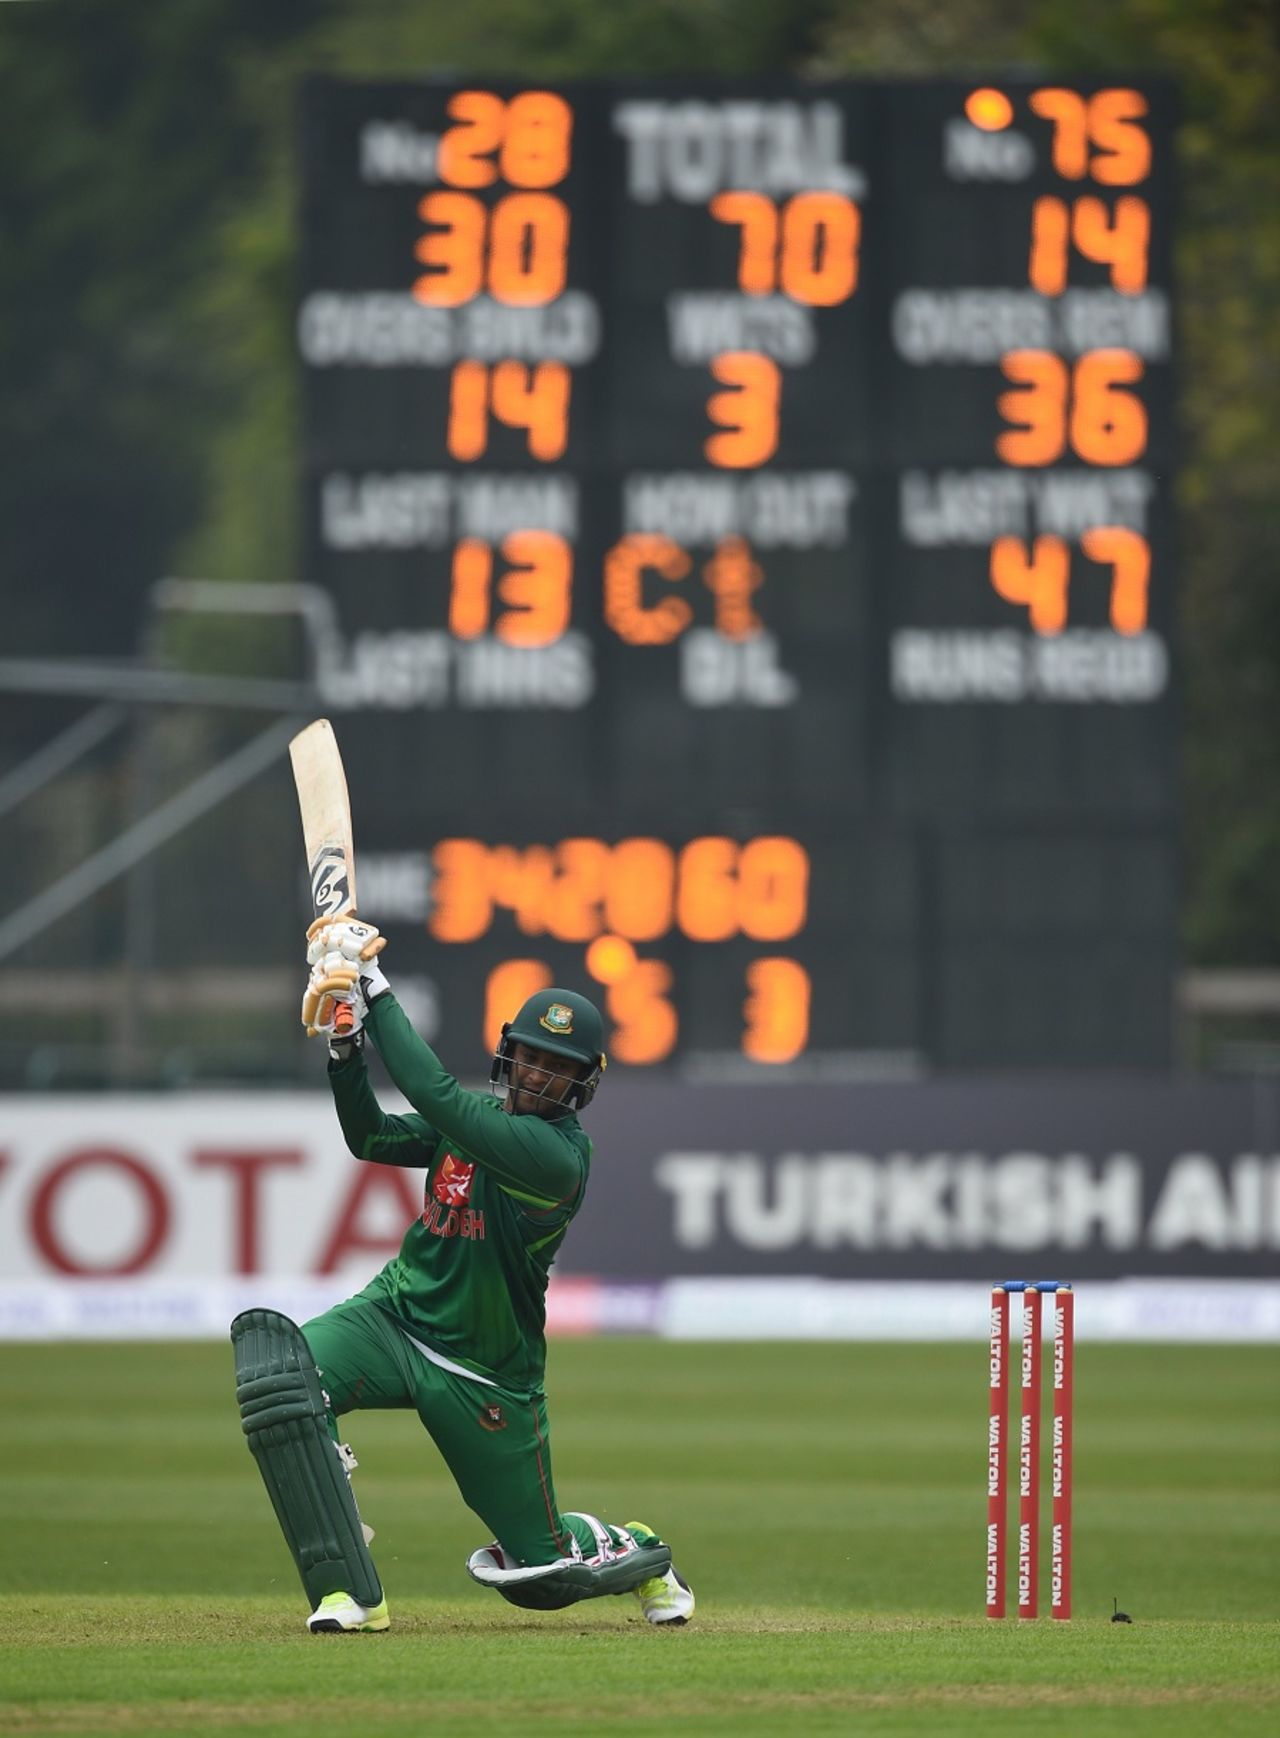 Shakib Al Hasan stood in as captain in the absence of Mashrafe Mortaza, Ireland v Bangladesh, tri-nation series, Malahide, May 12, 2017